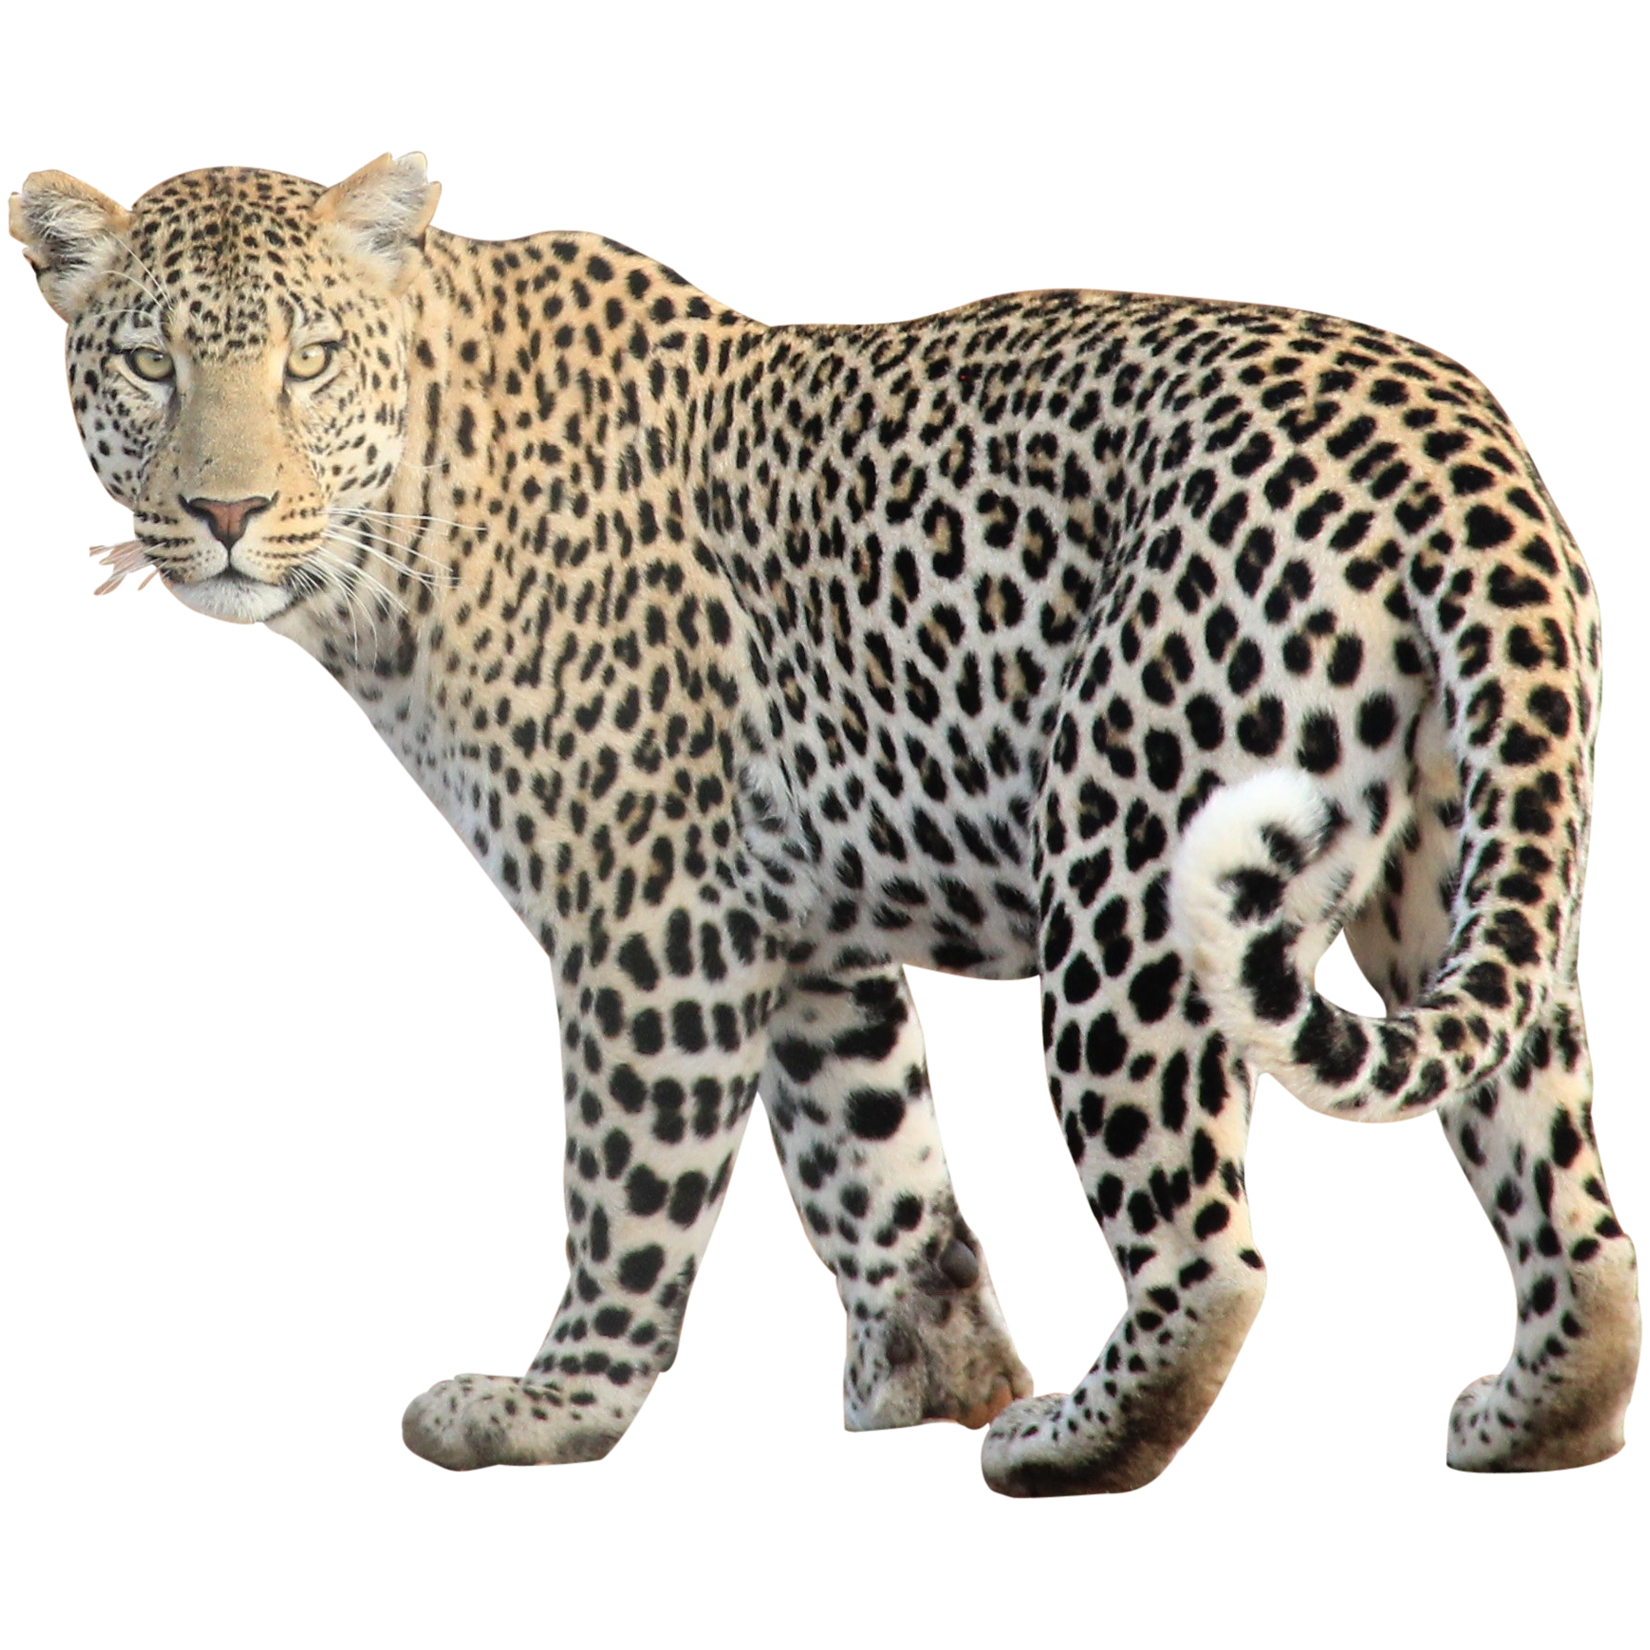 snow leopard clipart - photo #38